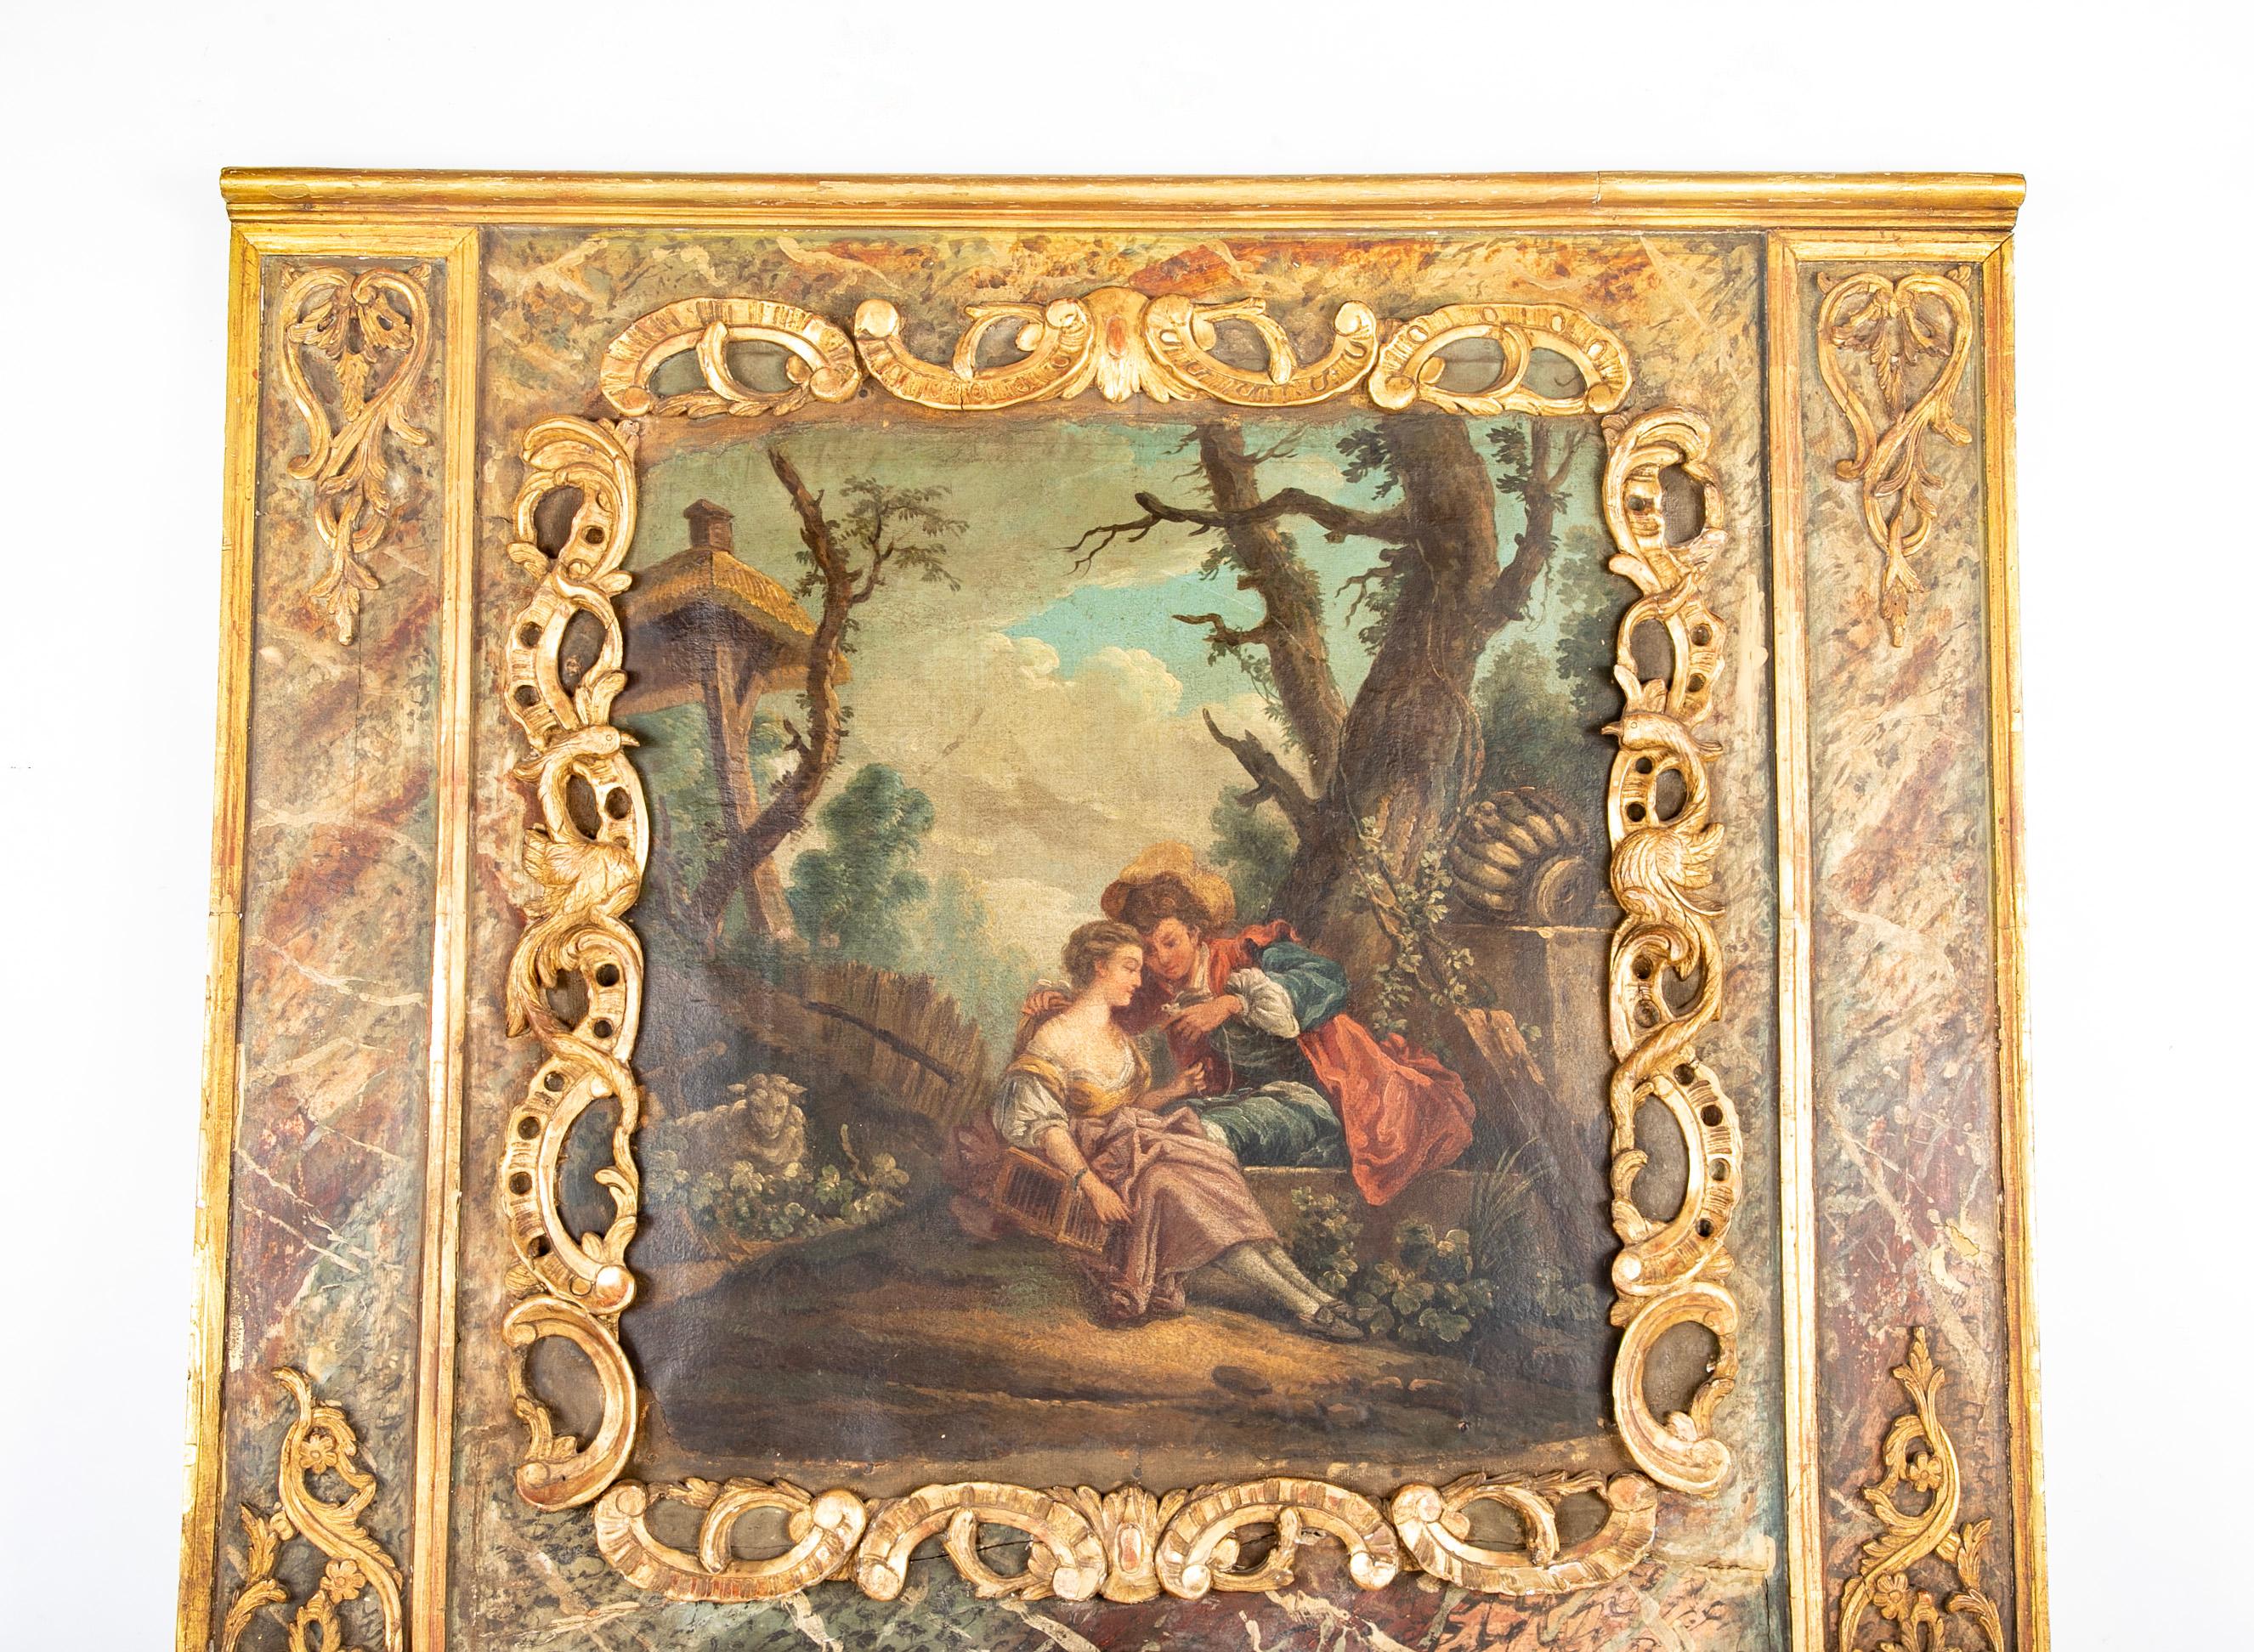 Miroir trumeau français de la fin du XVIIIe siècle avec des sculptures dorées, de rares fausses marbrures et une peinture romantique.